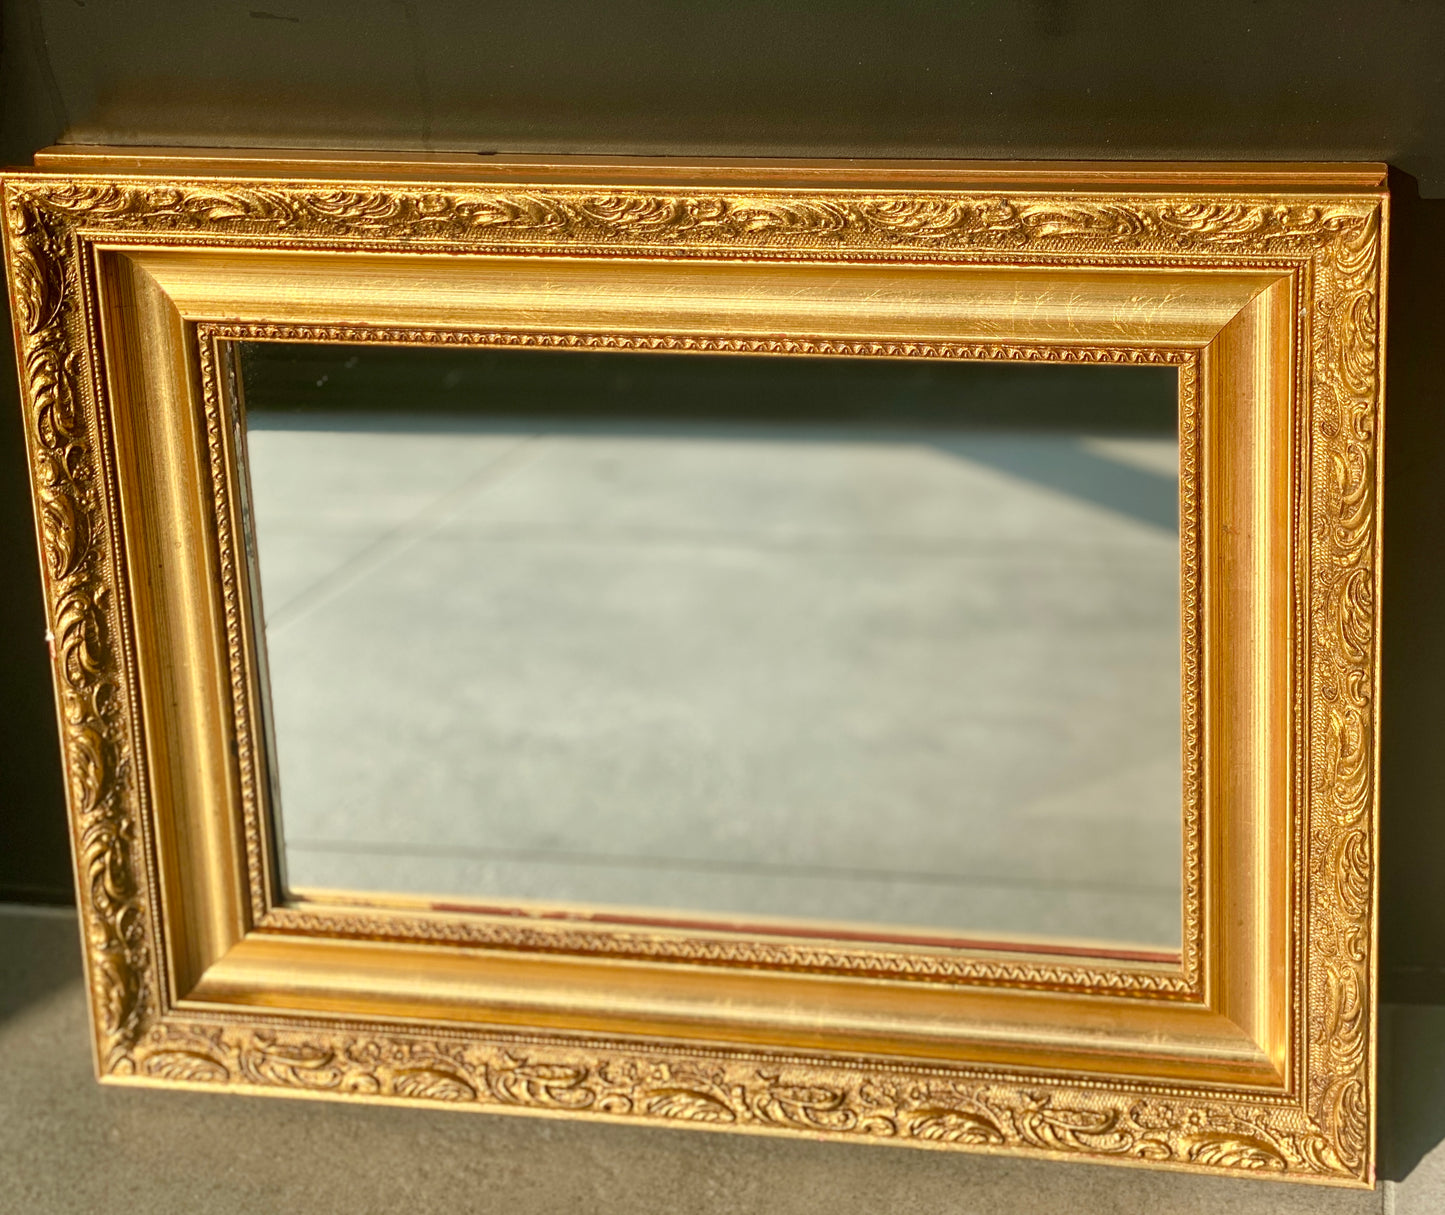 Grand miroir - bois doré - décor moulures